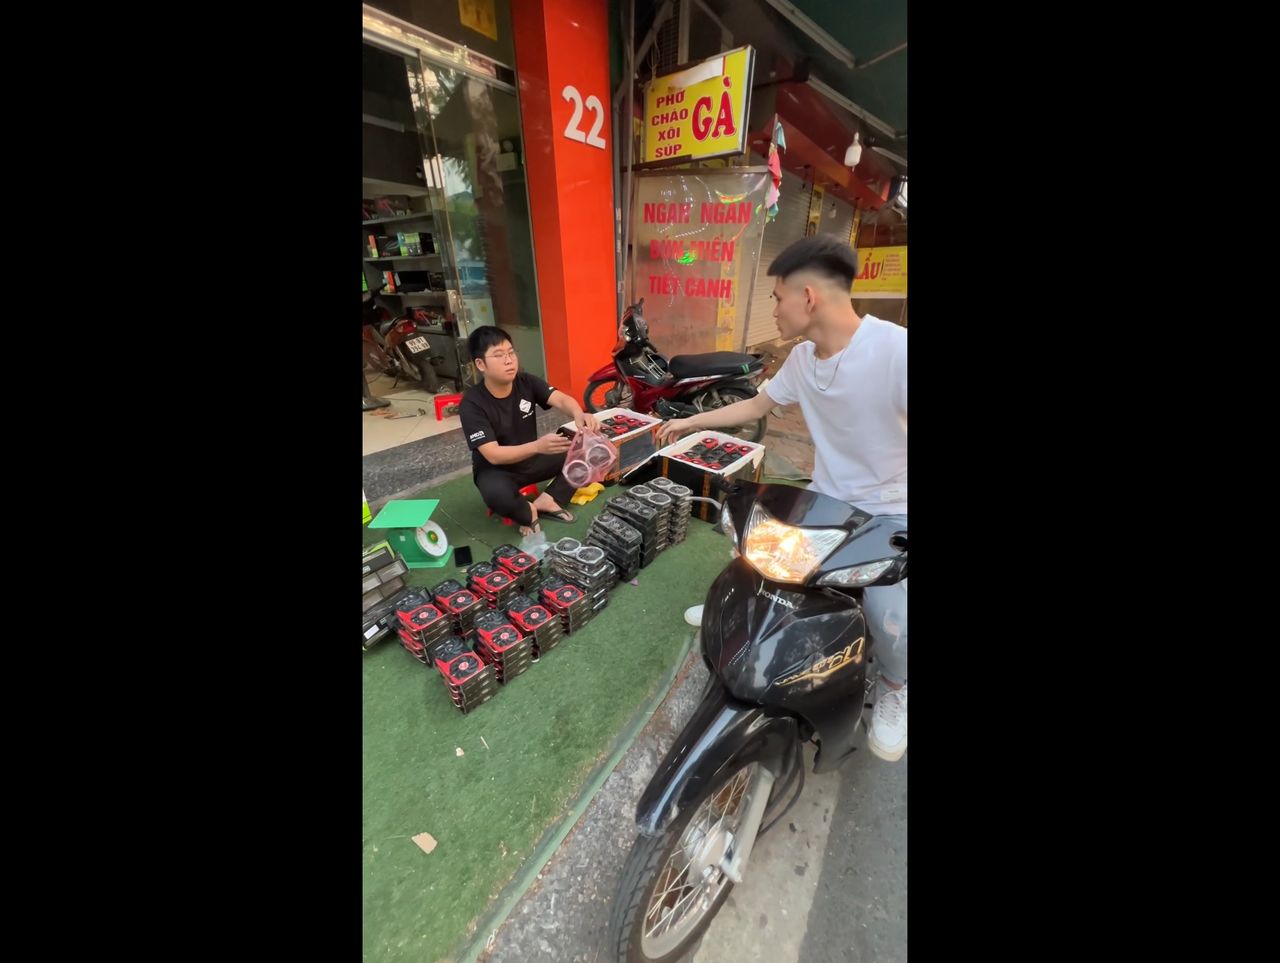 W Wietnamie kupicie karty graficzne na bazarze. Jest to efekt zmian w ETH